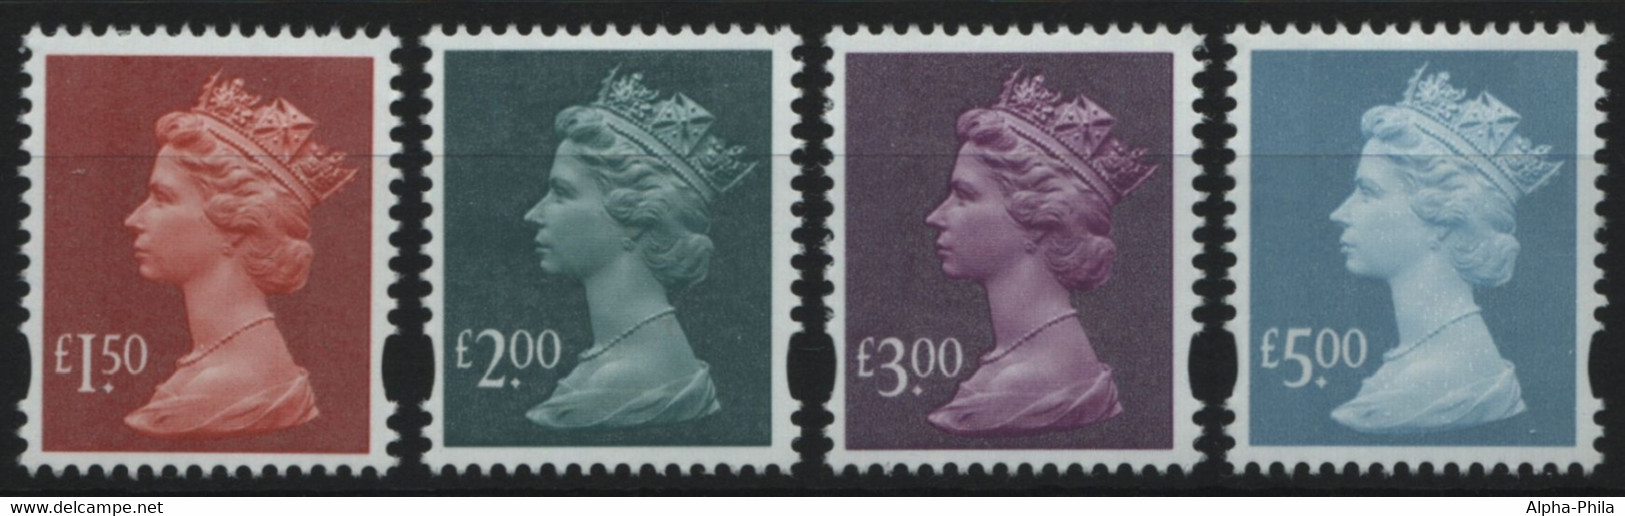 Großbritannien 2003 - Mi-Nr. 2136-2139 ** - MNH - Freimarken- Queen Elizabeth II - Ungebraucht